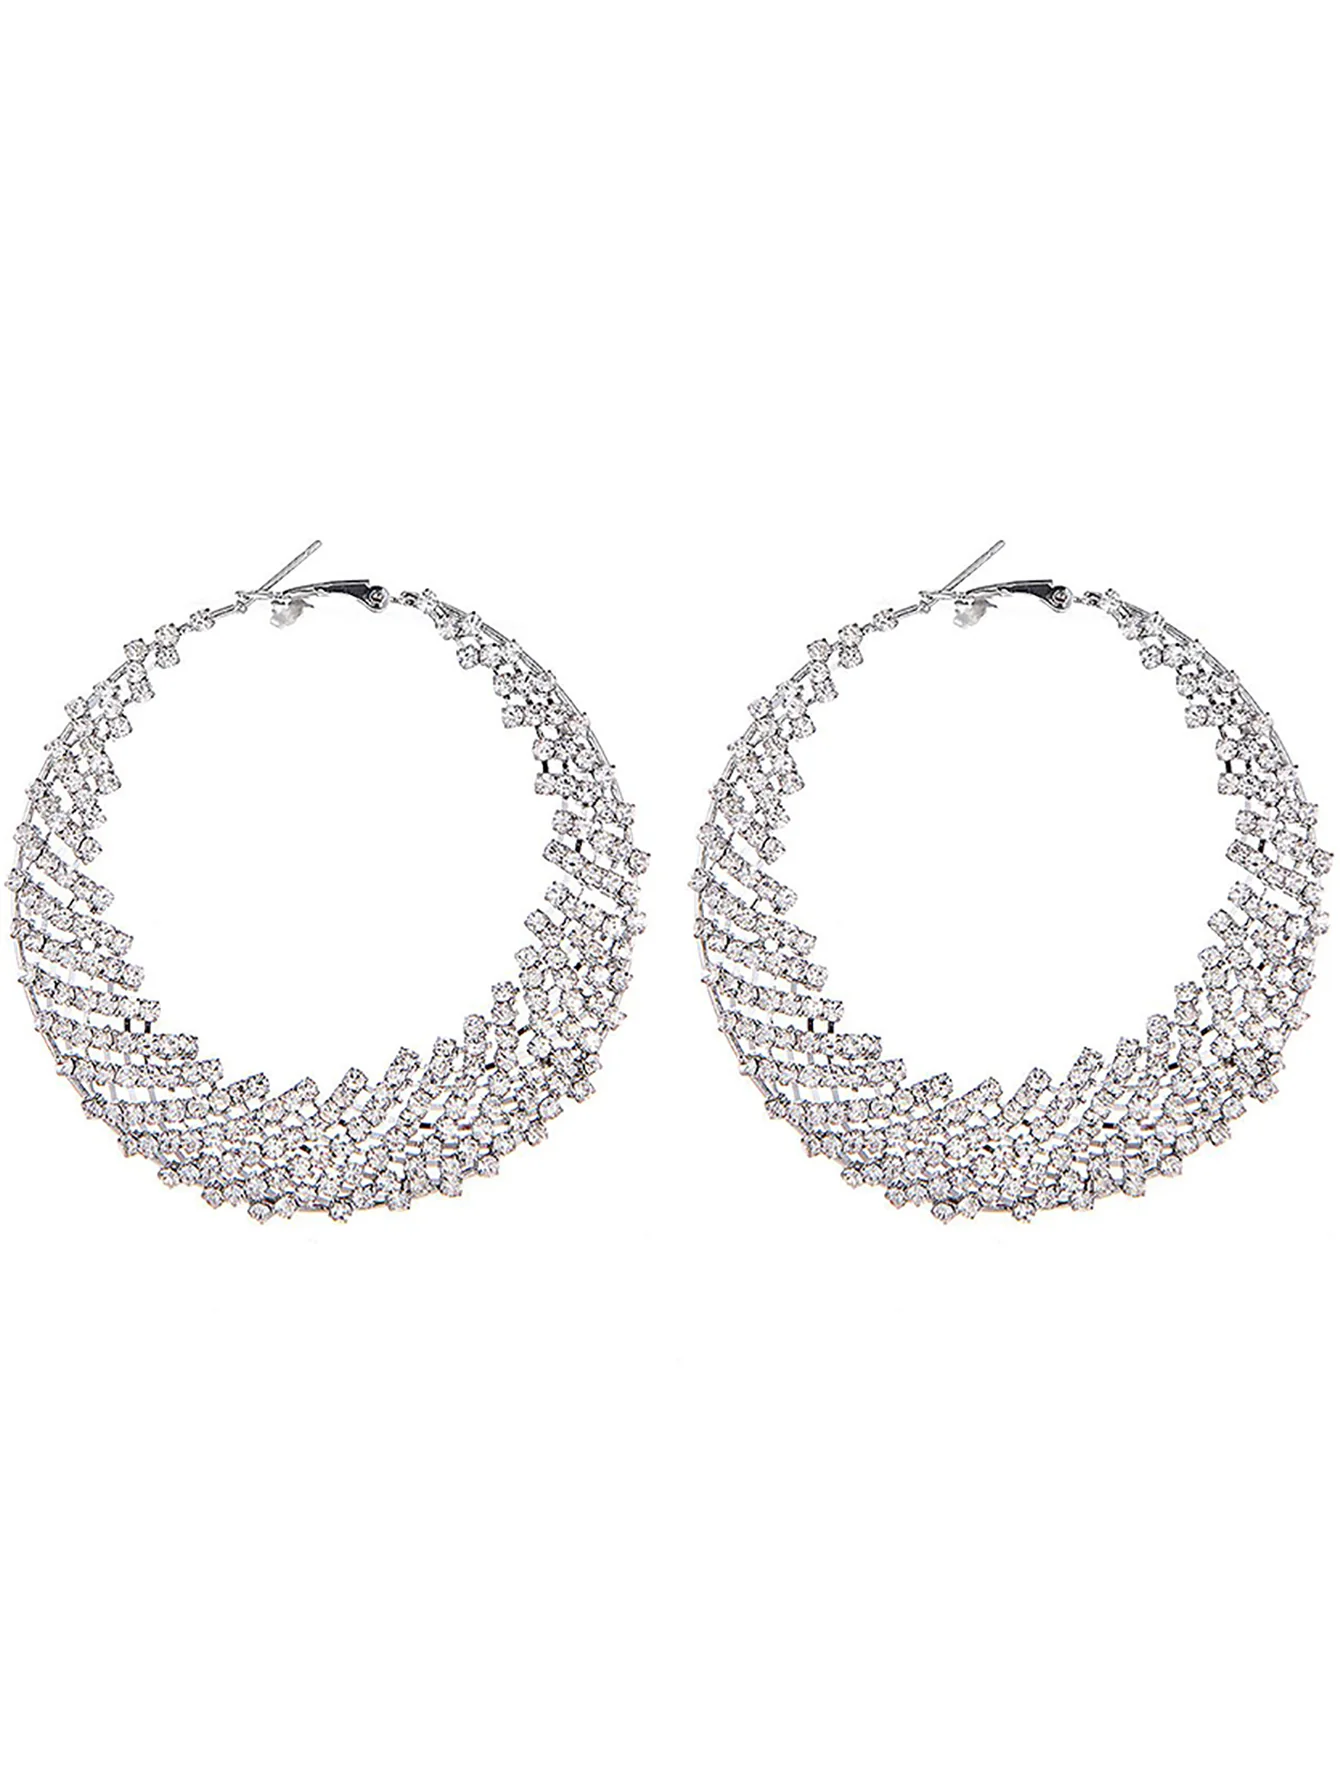 Silver Rhinestones Cutout Hoop Earrings